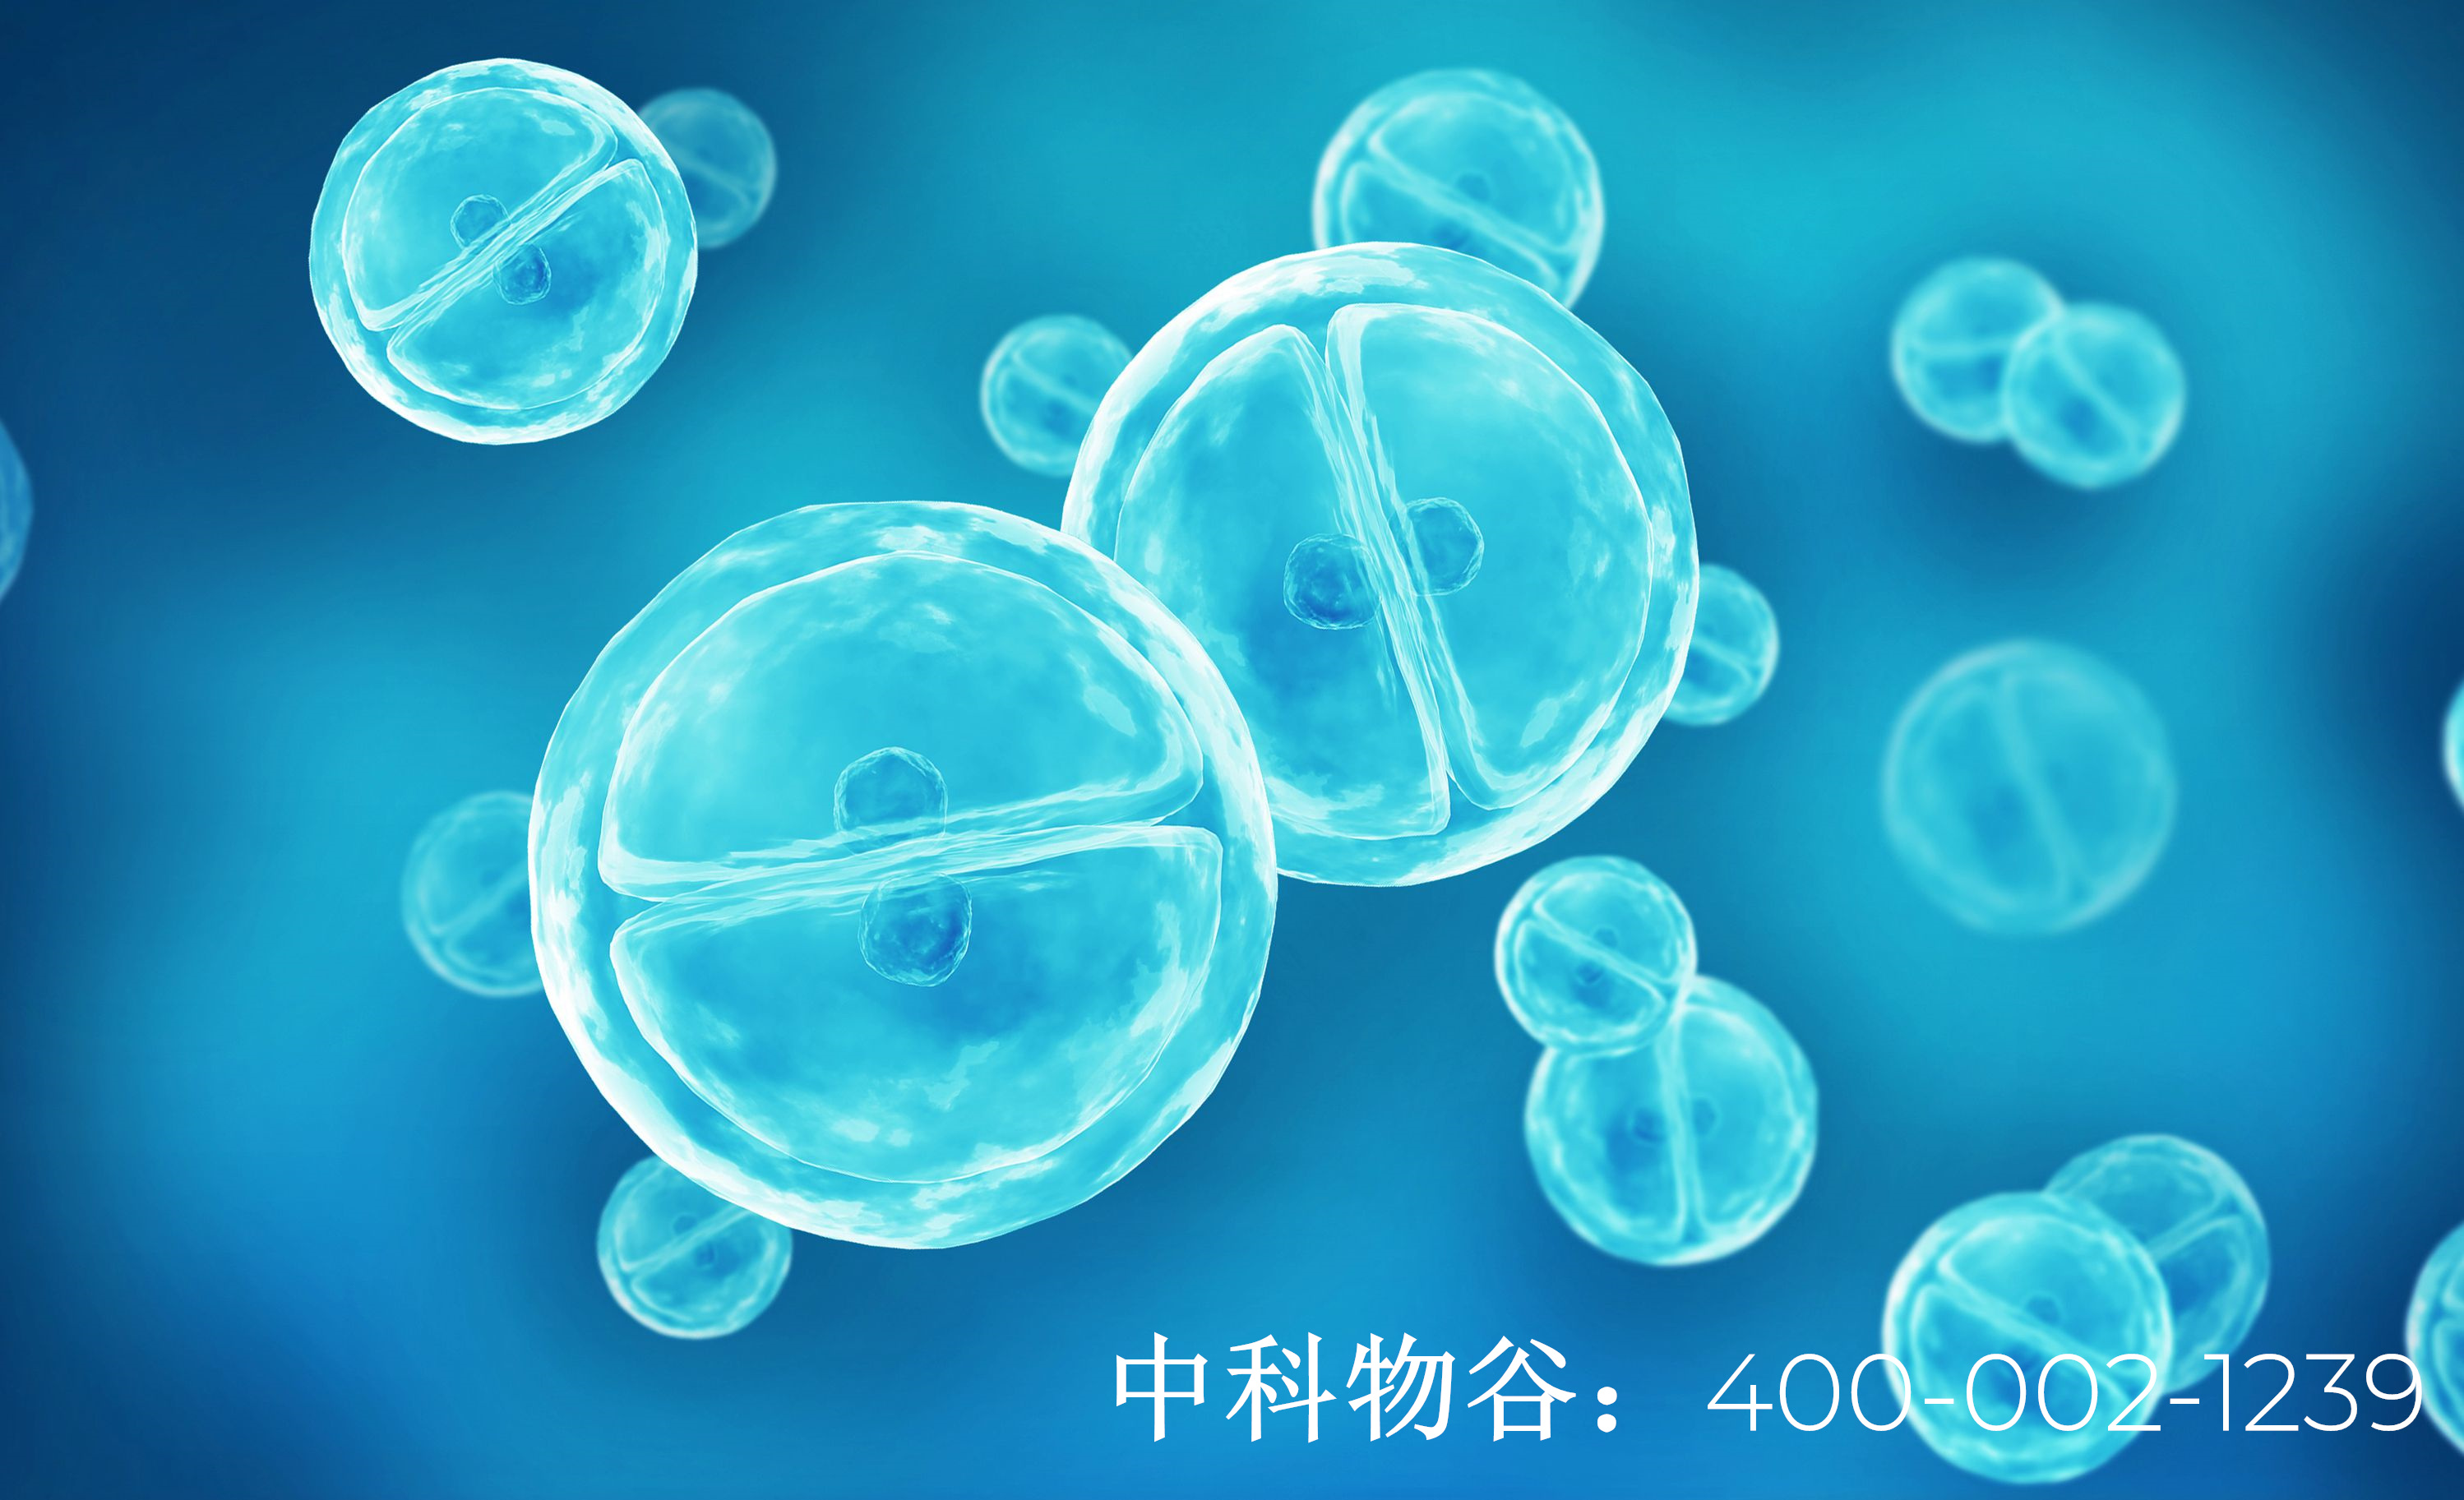 中国最大的干细胞公司中科物谷干细胞